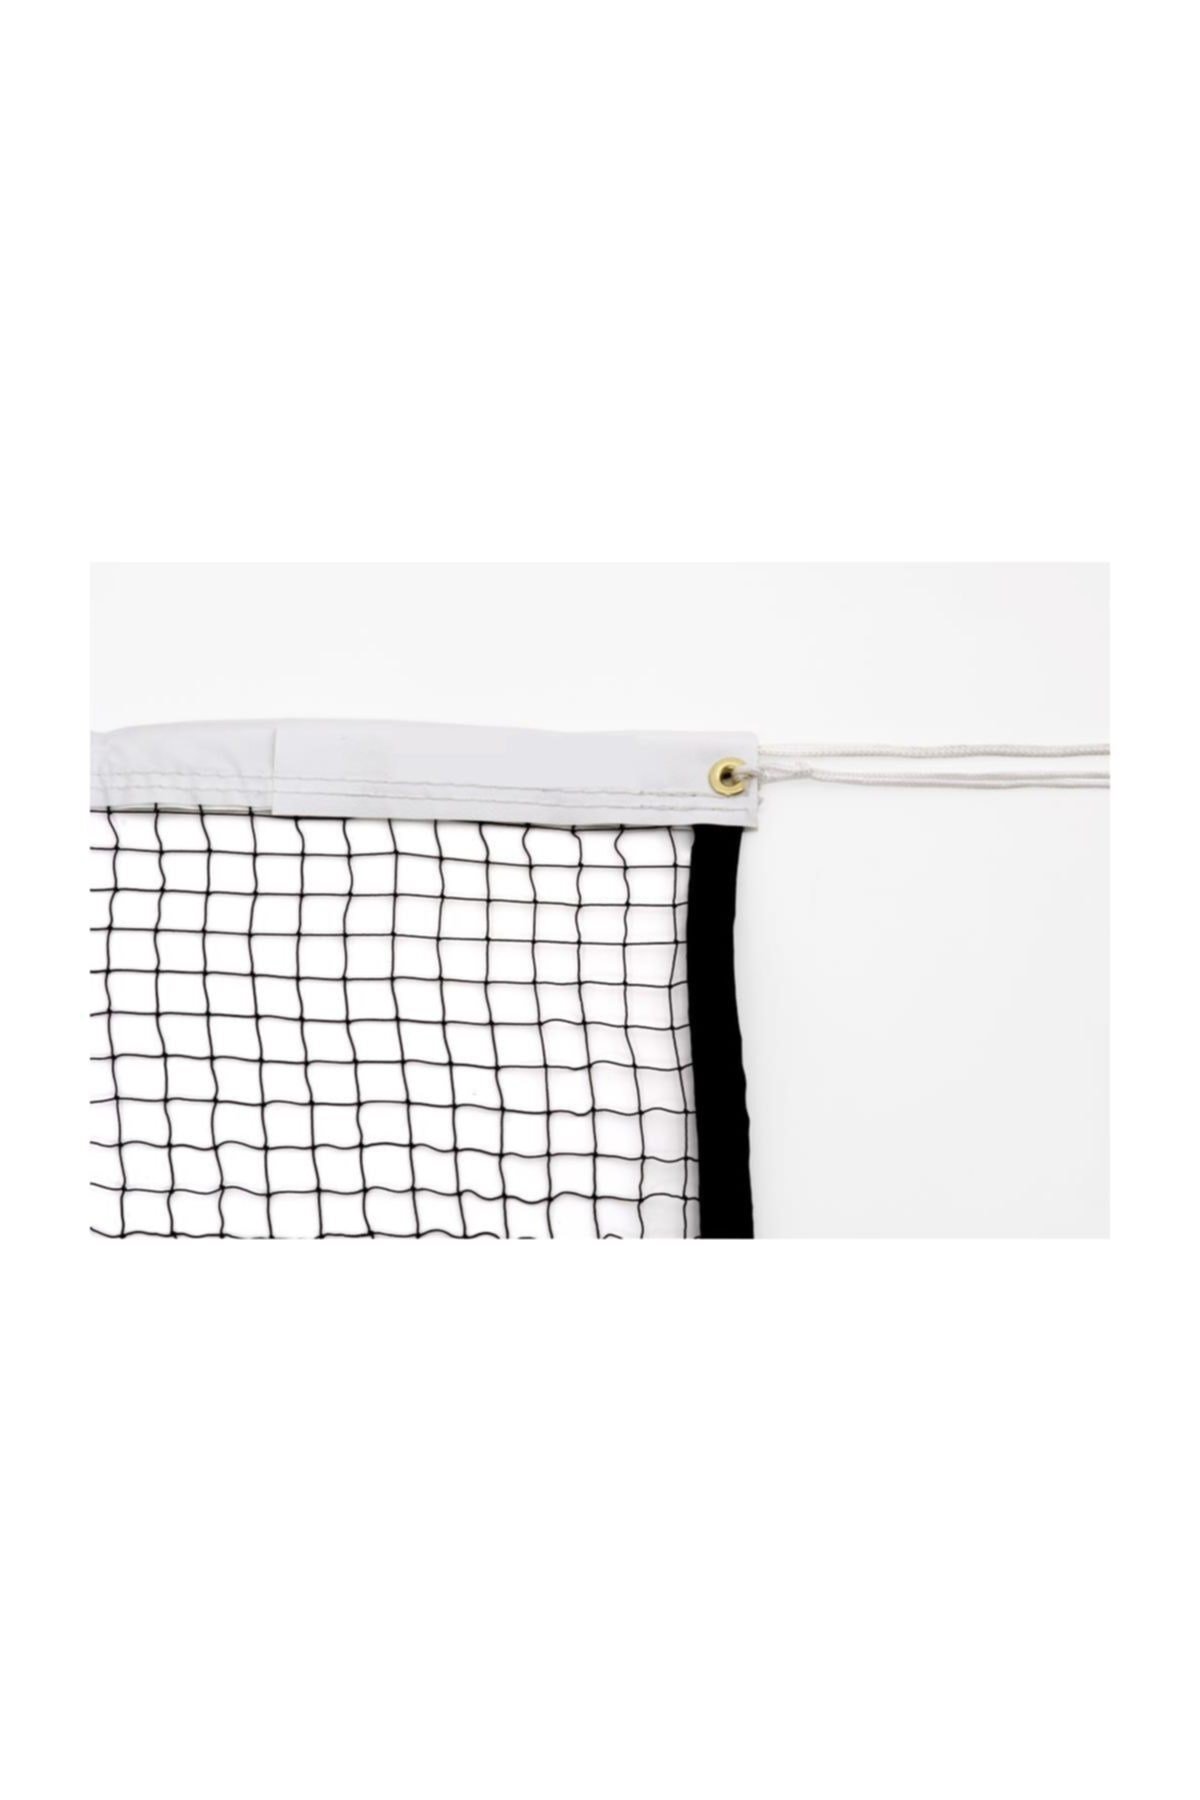 Attack Sport ABF156 Badminton Filesi 1,30 Mm 2x2 Cm